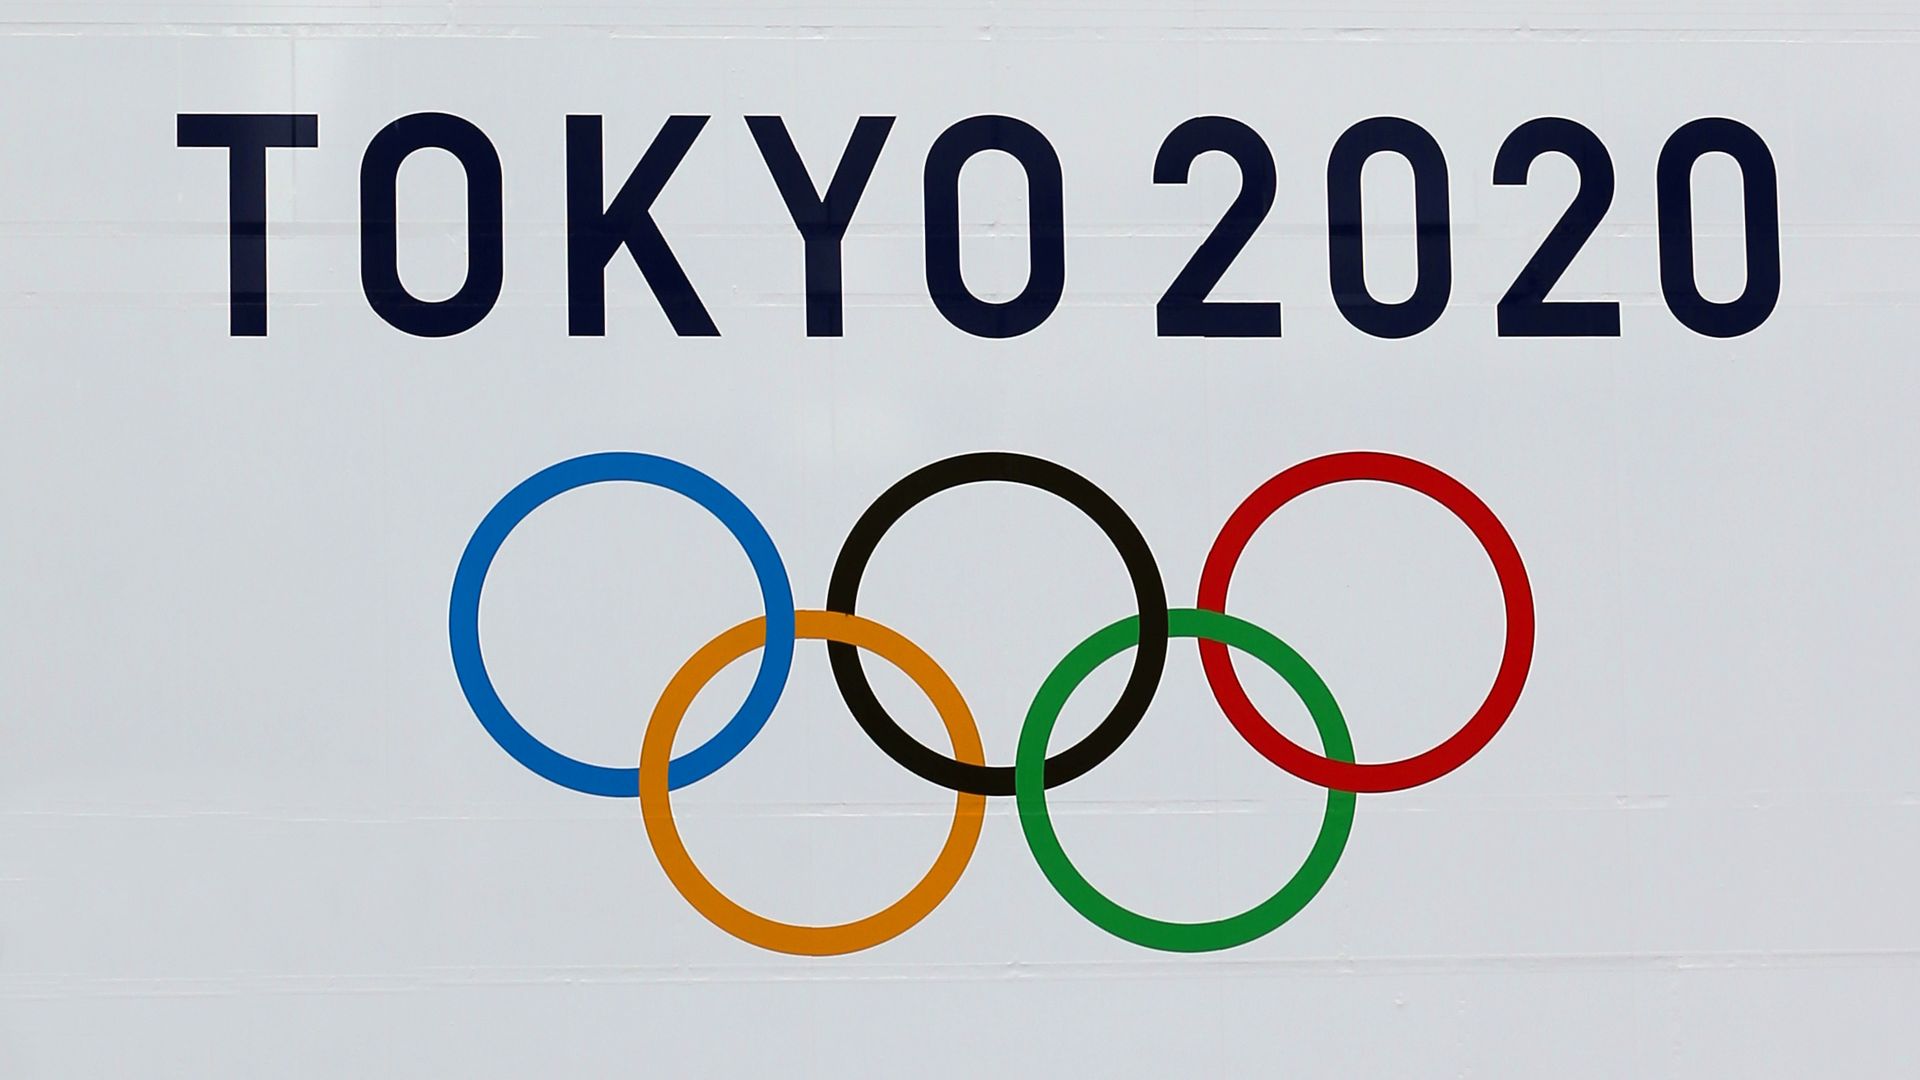 The Tokyo 2020 Olympics emblem